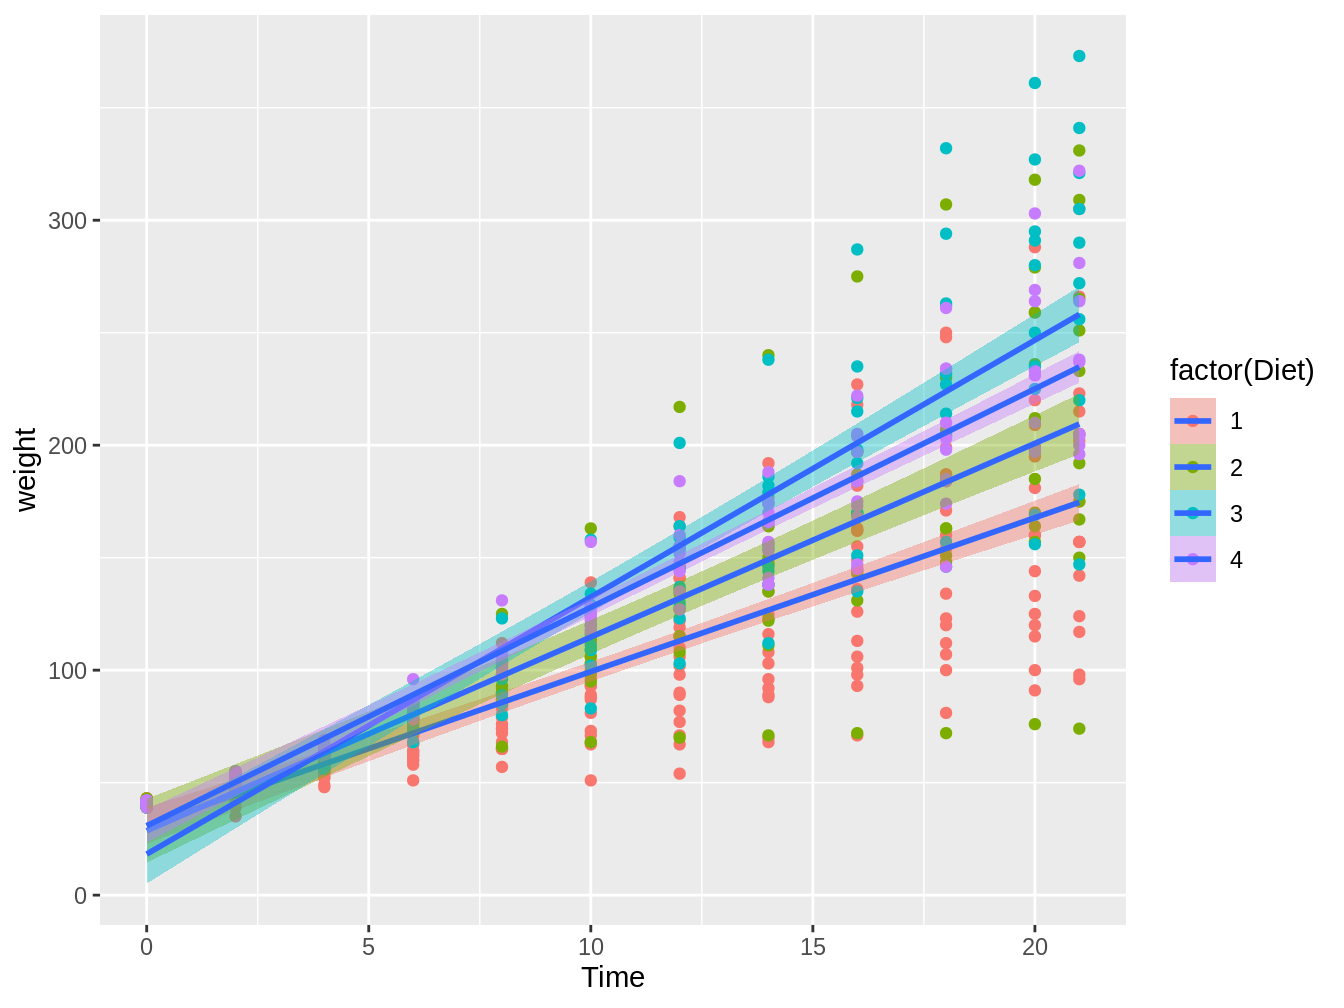 Gráfico en el cual vemos el peso de pollos en el tiempo, con colores distintos según el tipo de dieta, con líneas de tendencia e intervalos de confianza basados en modelos lineales